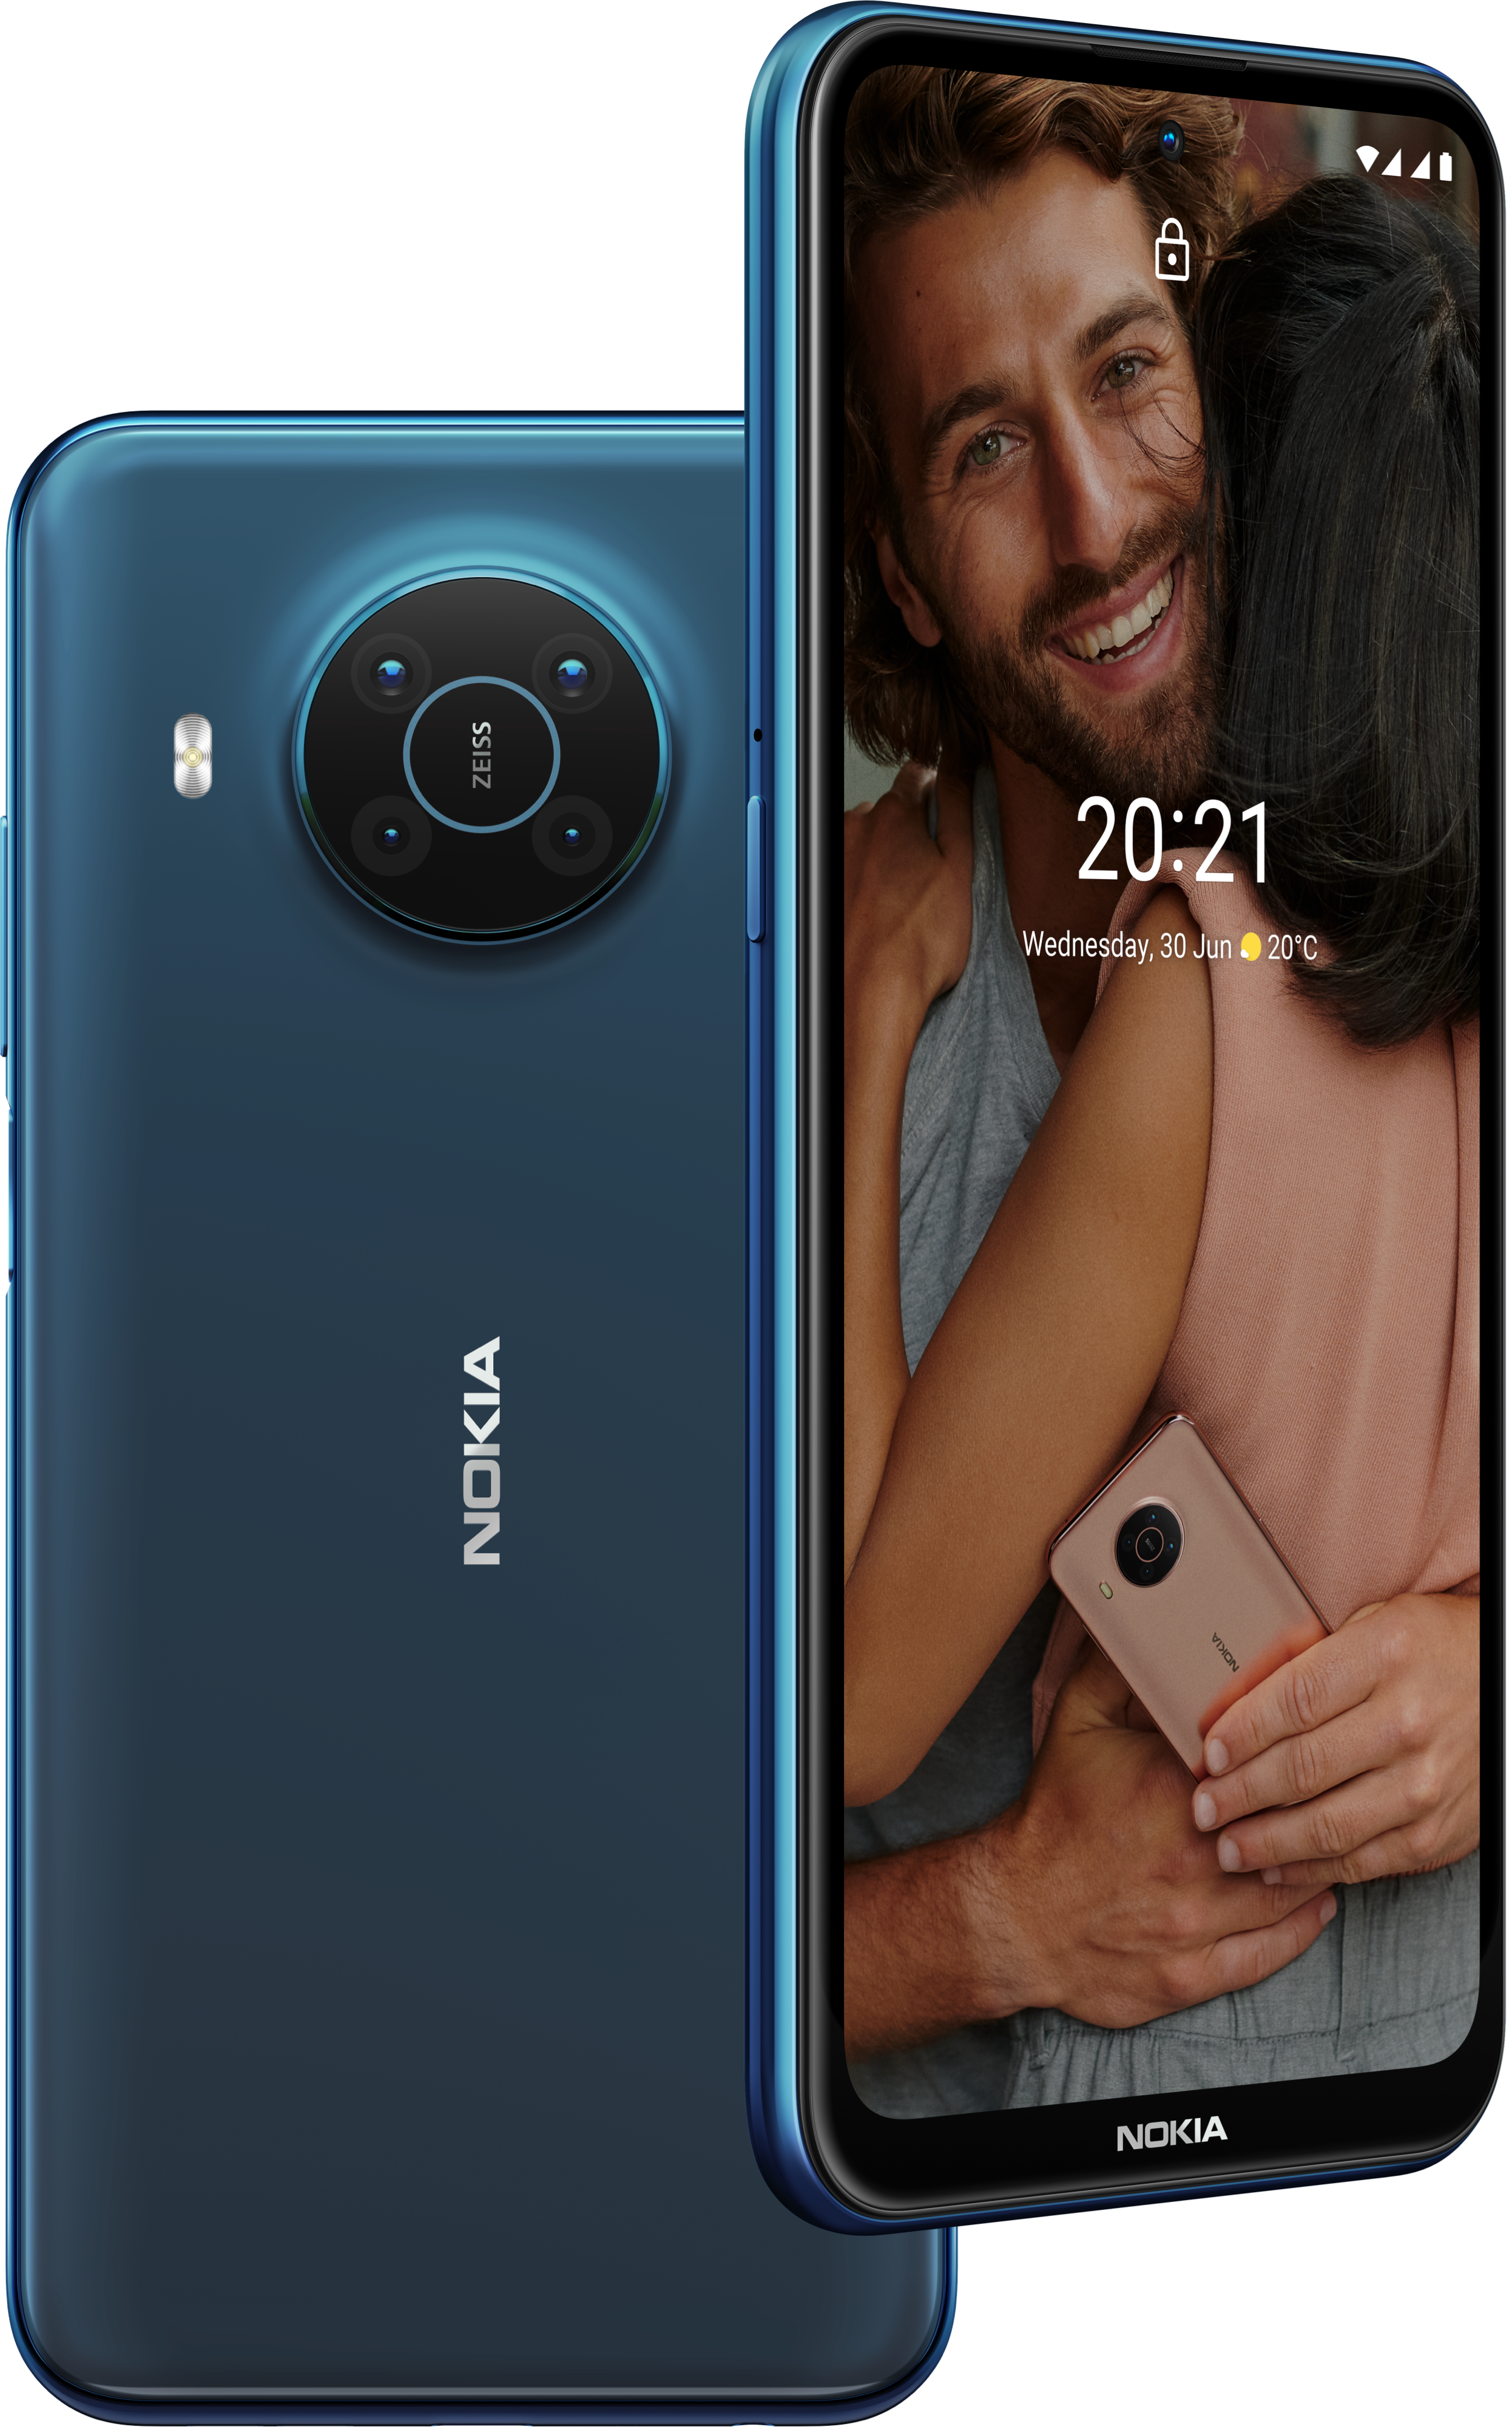 Nokia mobile